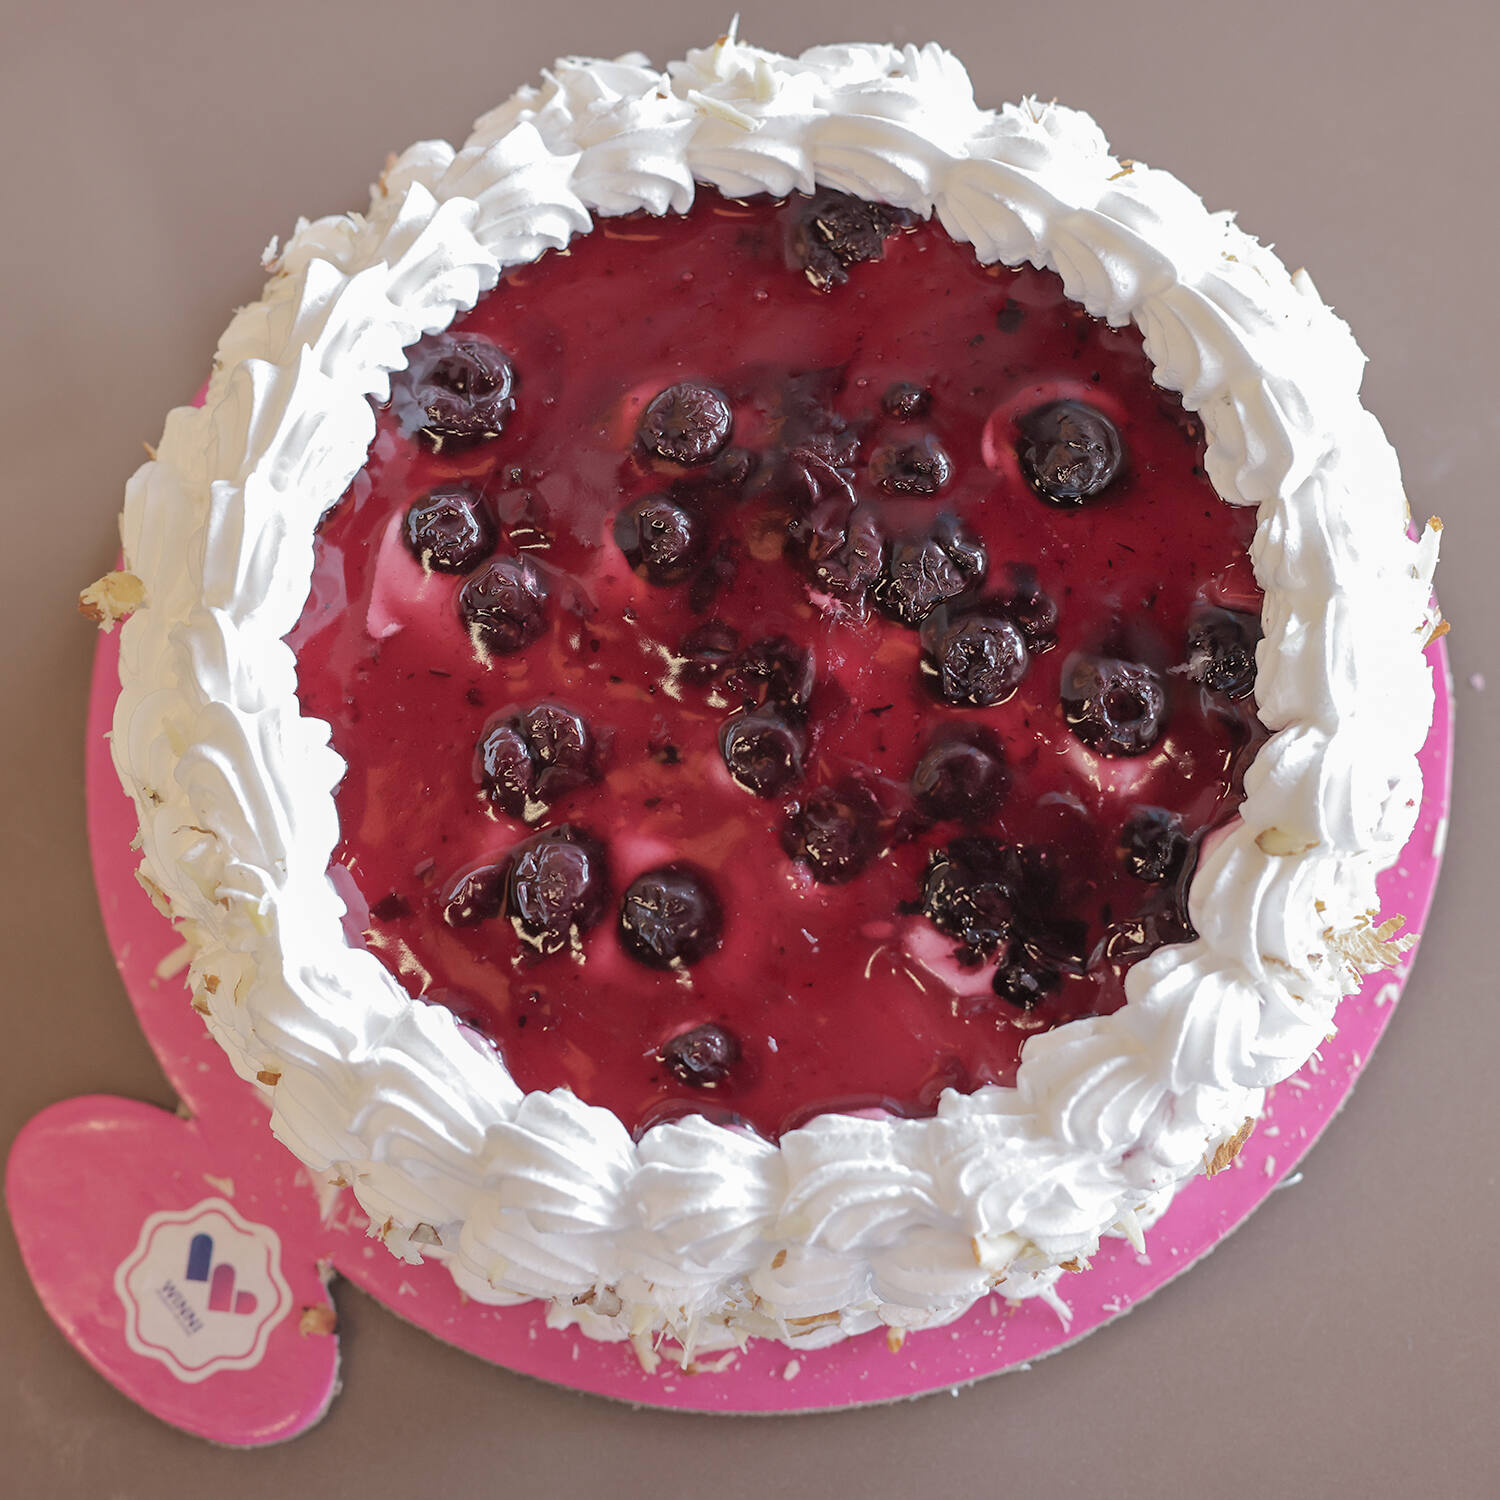 Share 59+ blueberry gateaux cake best - awesomeenglish.edu.vn